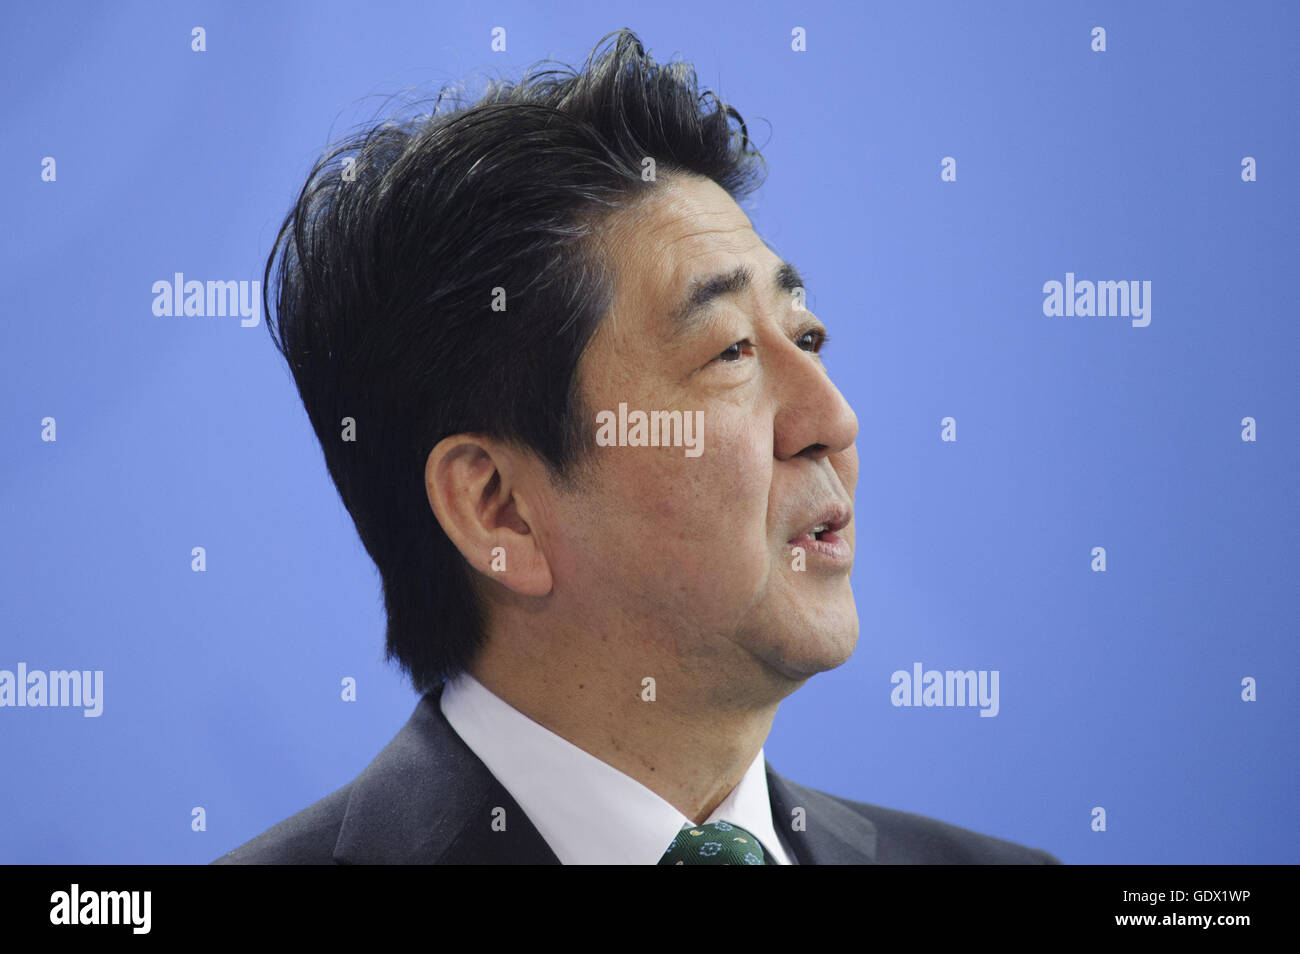 Porträt von Shinzo Abe auf einer Pressekonferenz in Berlin, Deutschland, 2014 Stockfoto